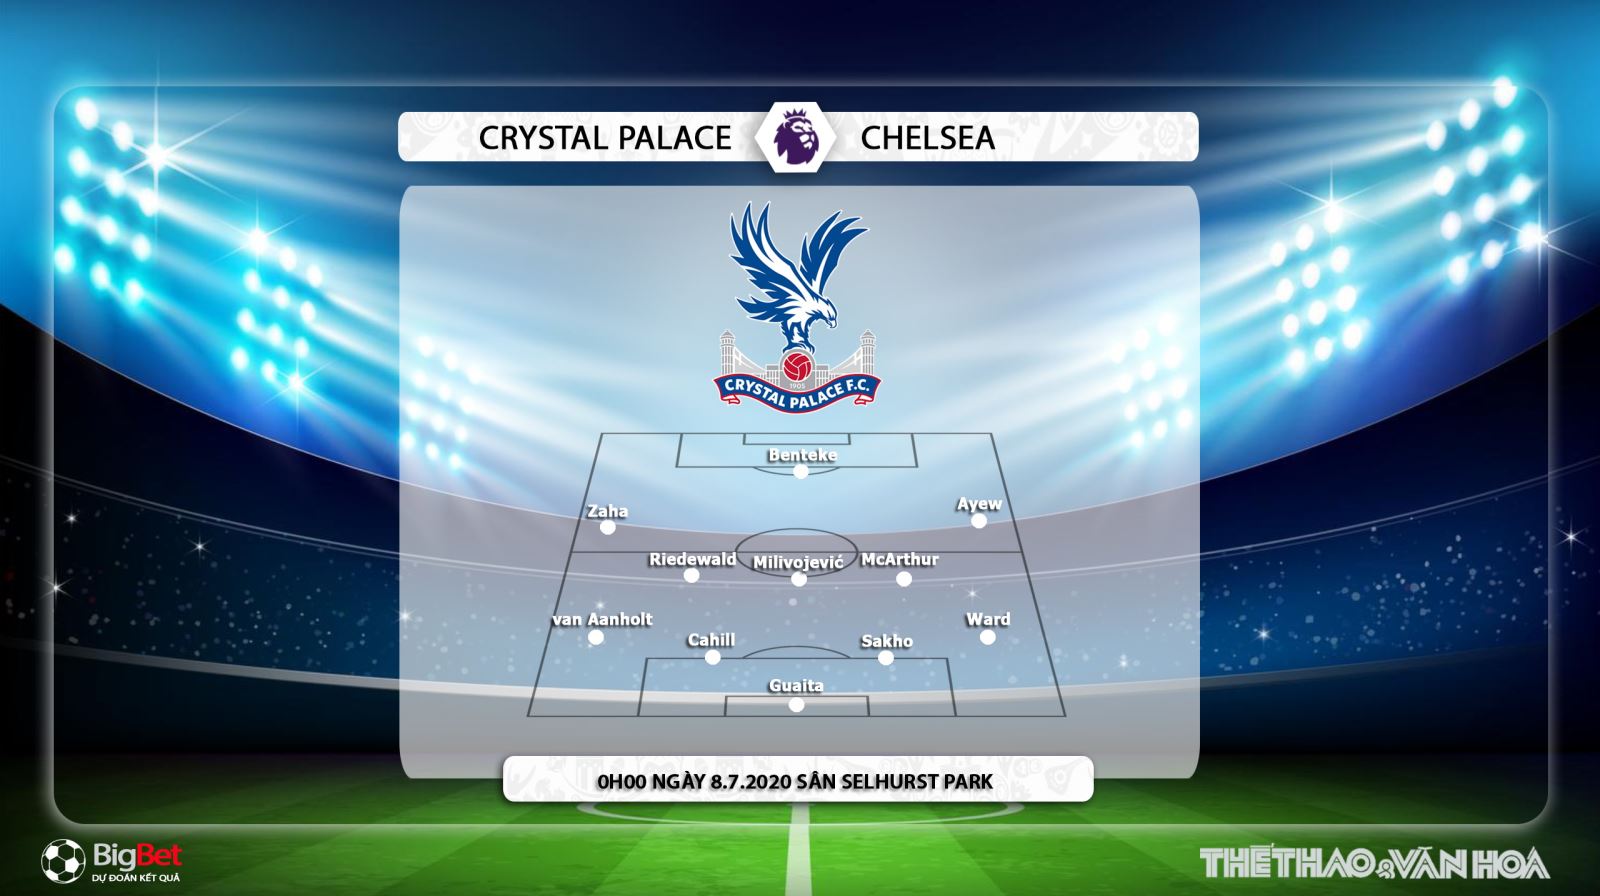 Crysal Palace vs Chelsea, Chelsea, nhận định bóng đá, kèo bóng đá, trực tiếp Crysal Palace vs Chelsea, nhận định, dự đoán, lịch thi đấu bóng đá hôm nay